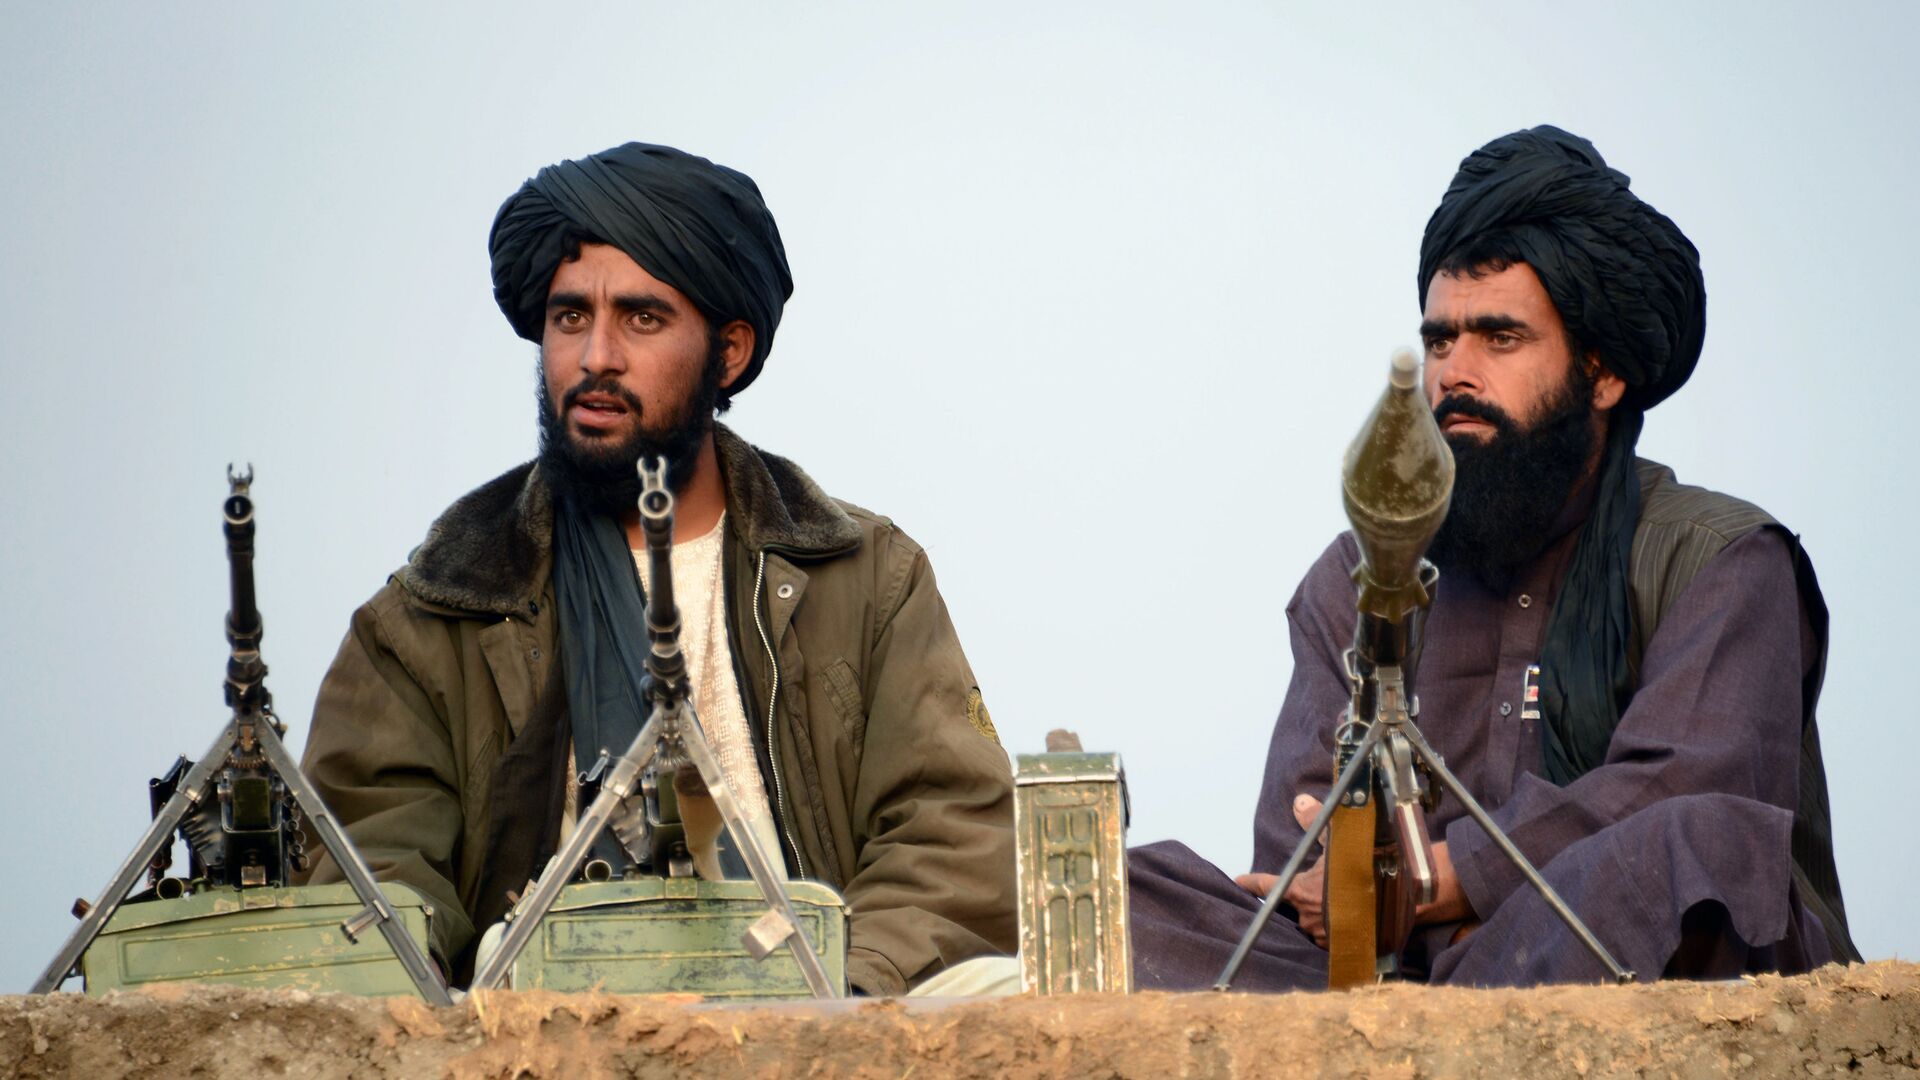 Боевики движения Талибан, архивное фото - Sputnik Таджикистан, 1920, 09.07.2021